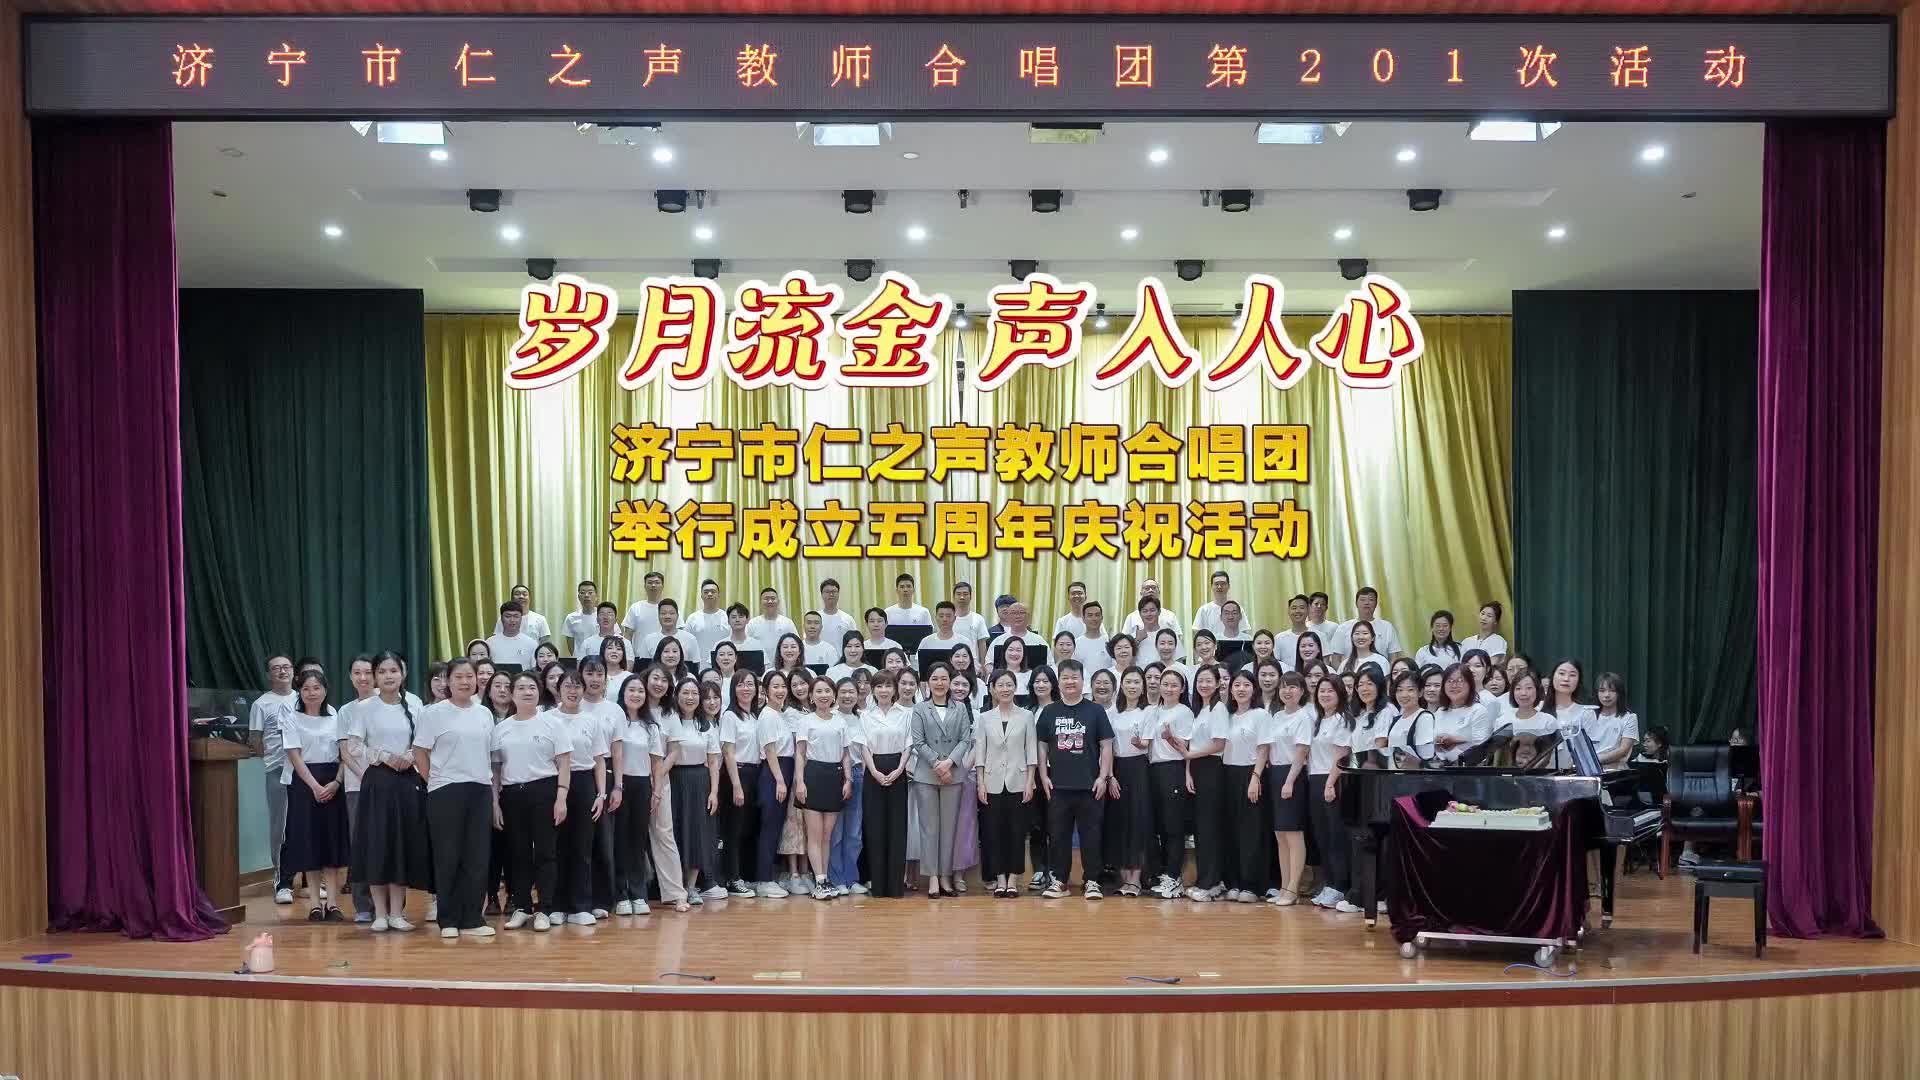 更济宁 | 岁月流金 声入人心——济宁市仁之声教师合唱团举行成立五周年庆祝活动